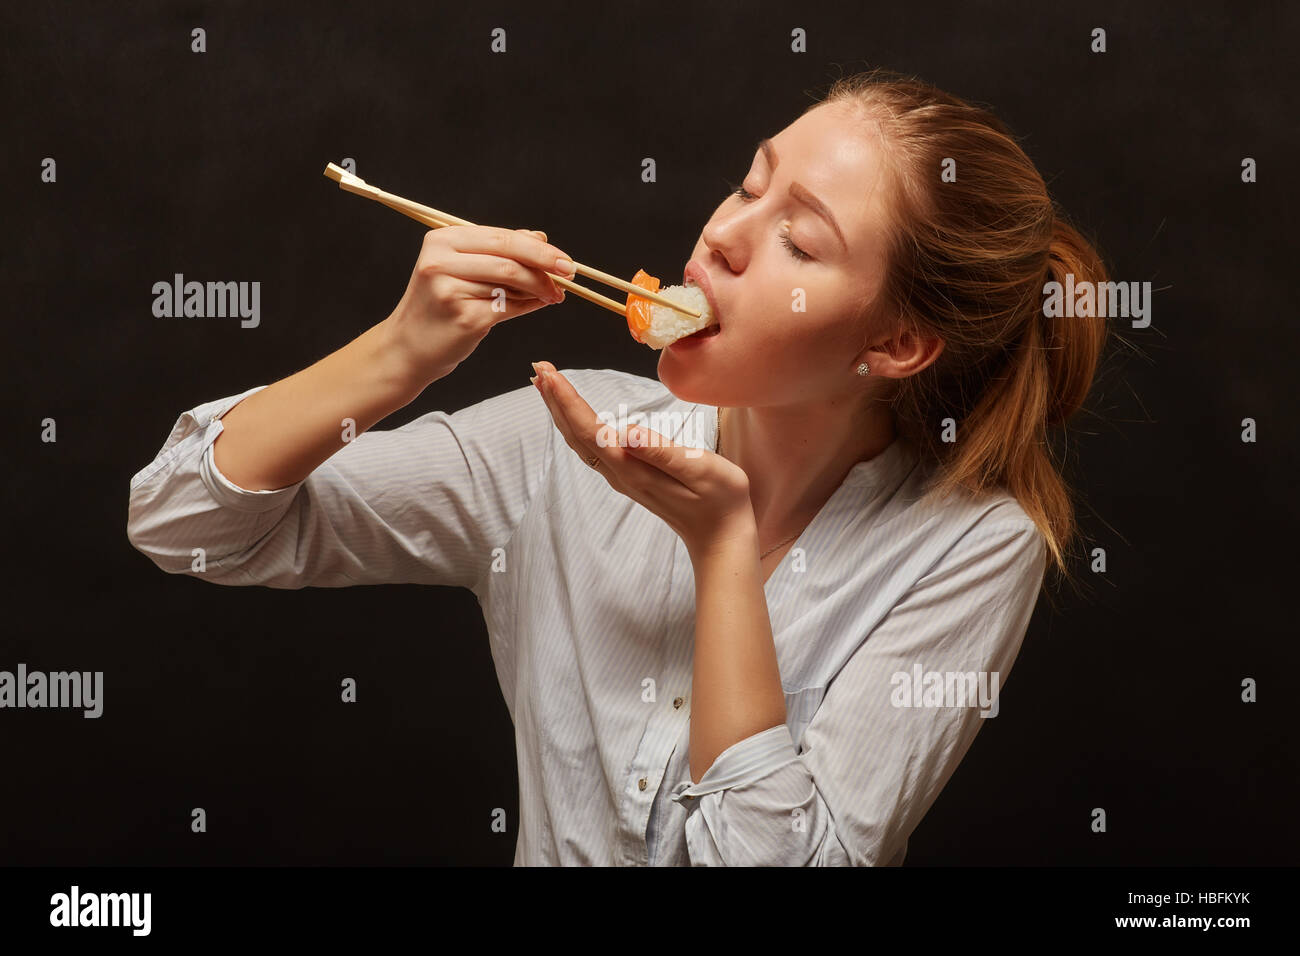 Девушка есть суши. Девушка ест роллы. Девушка ест палочками. Девушка ест. Девушка есть роллы палочками.